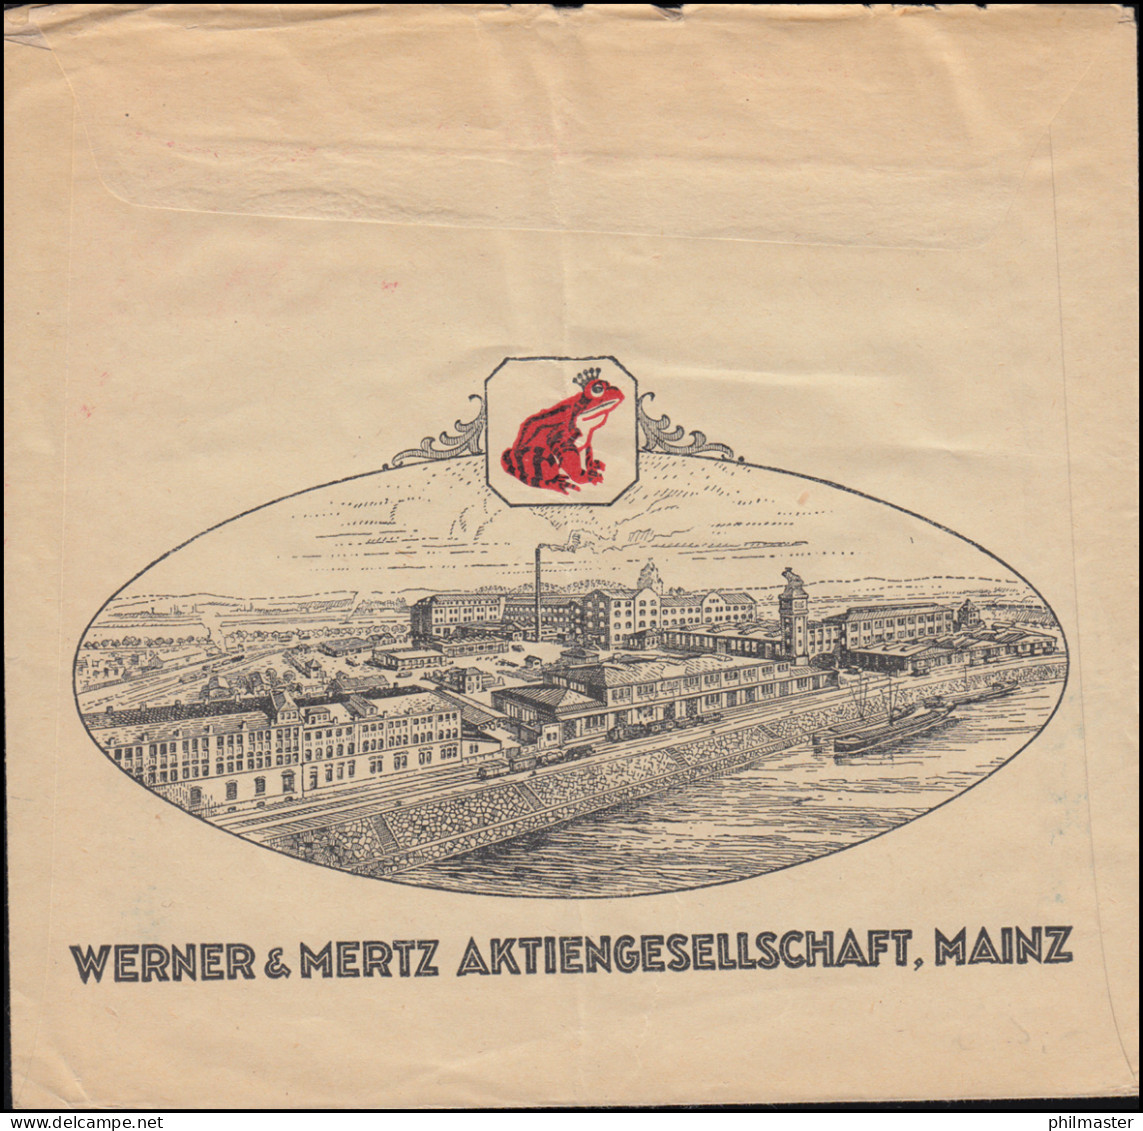 AFS Erdalfabrik Werner & Mertz MAINZ 27.12.1927 Auf Fensterbrief - Textile